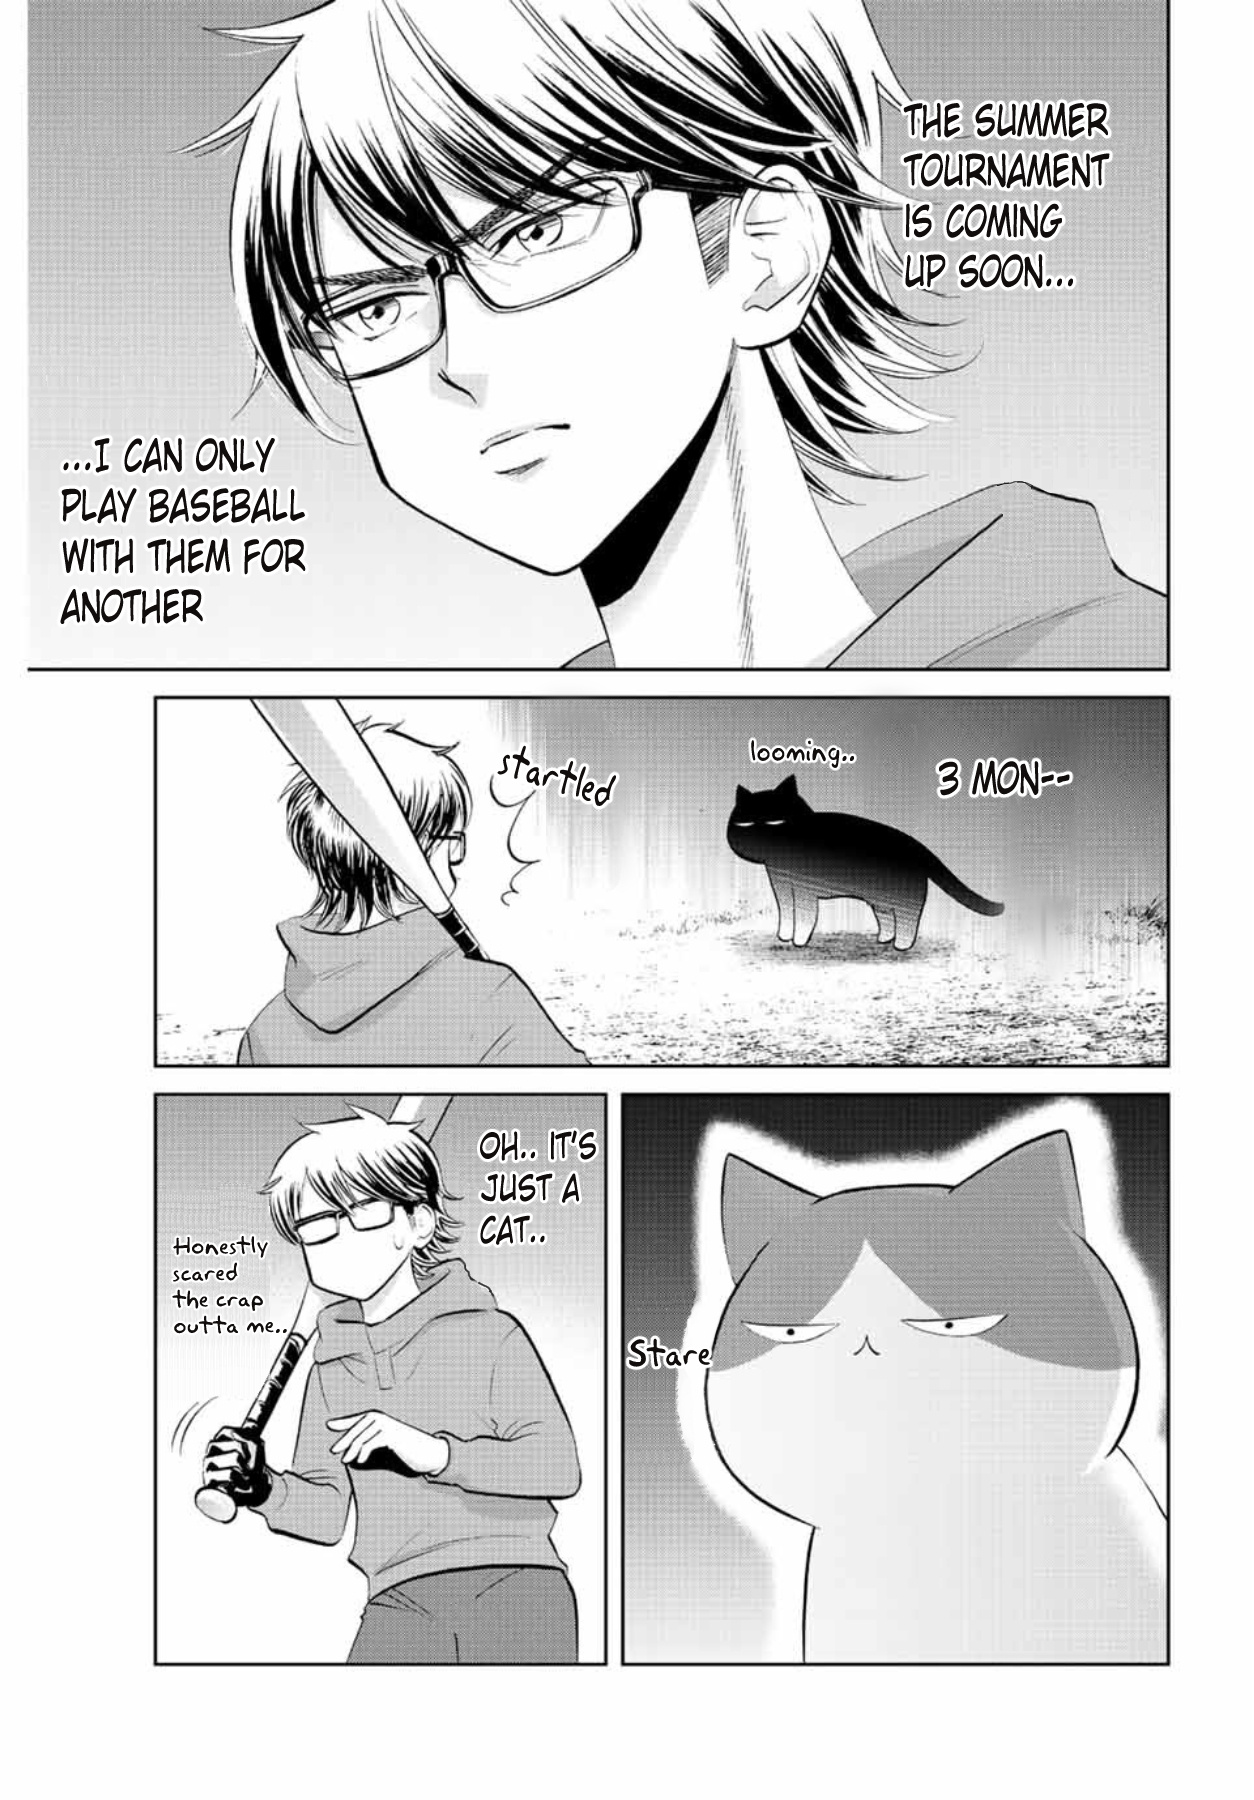 Daiya No C Vol.1 Chapter 3: Miyuki And The Cat - Picture 3